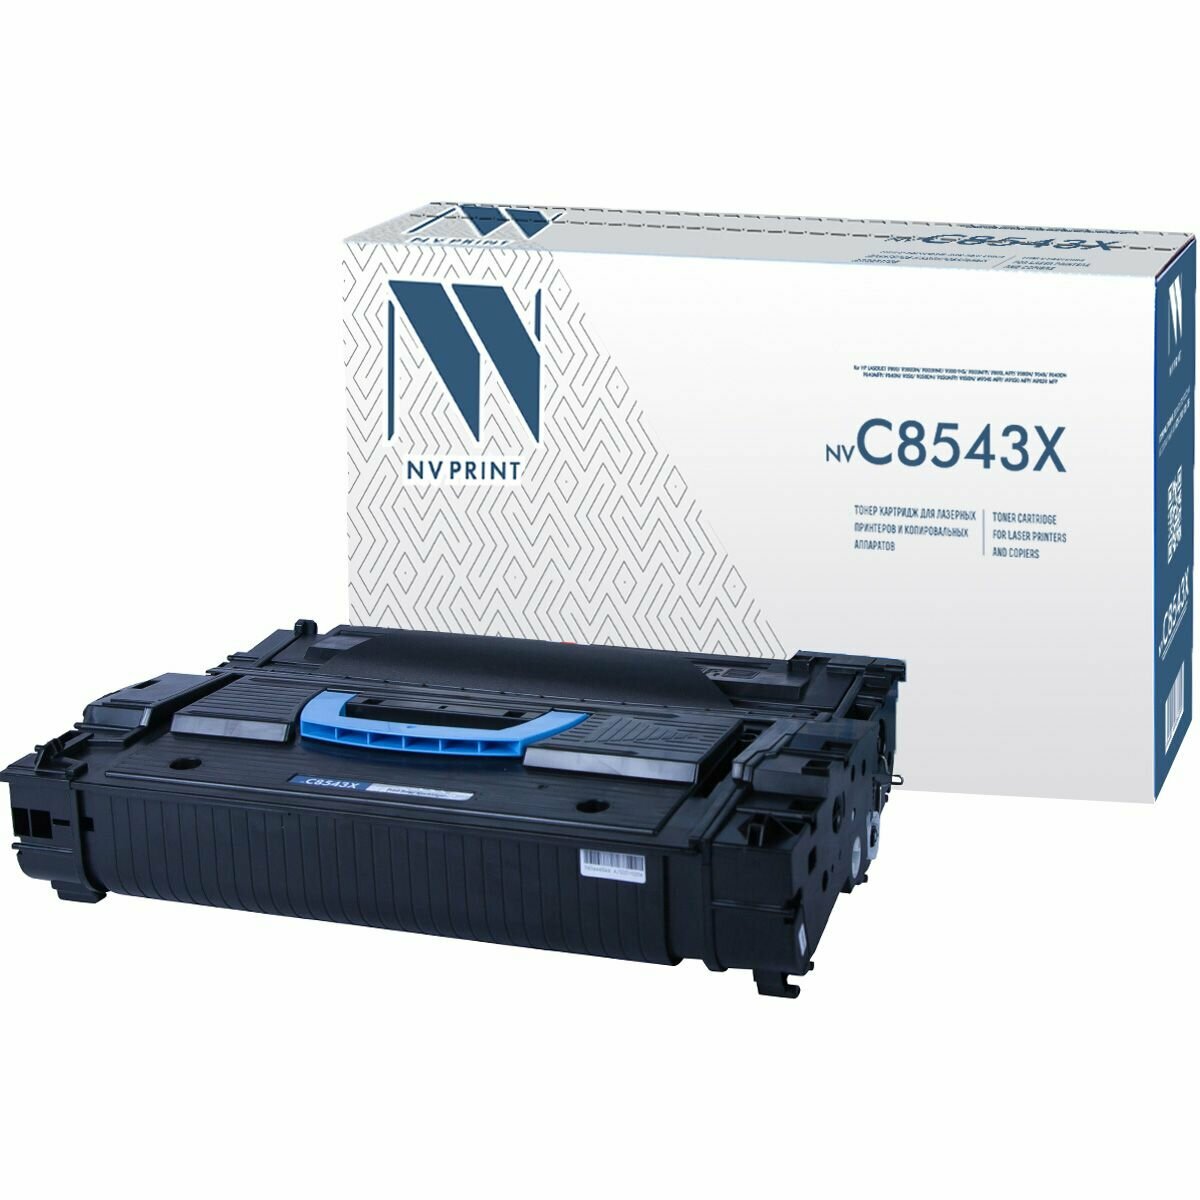 Картридж C8543X (43X) для принтера HP LaserJet 9050; M9050 MFP; 9050 MFP